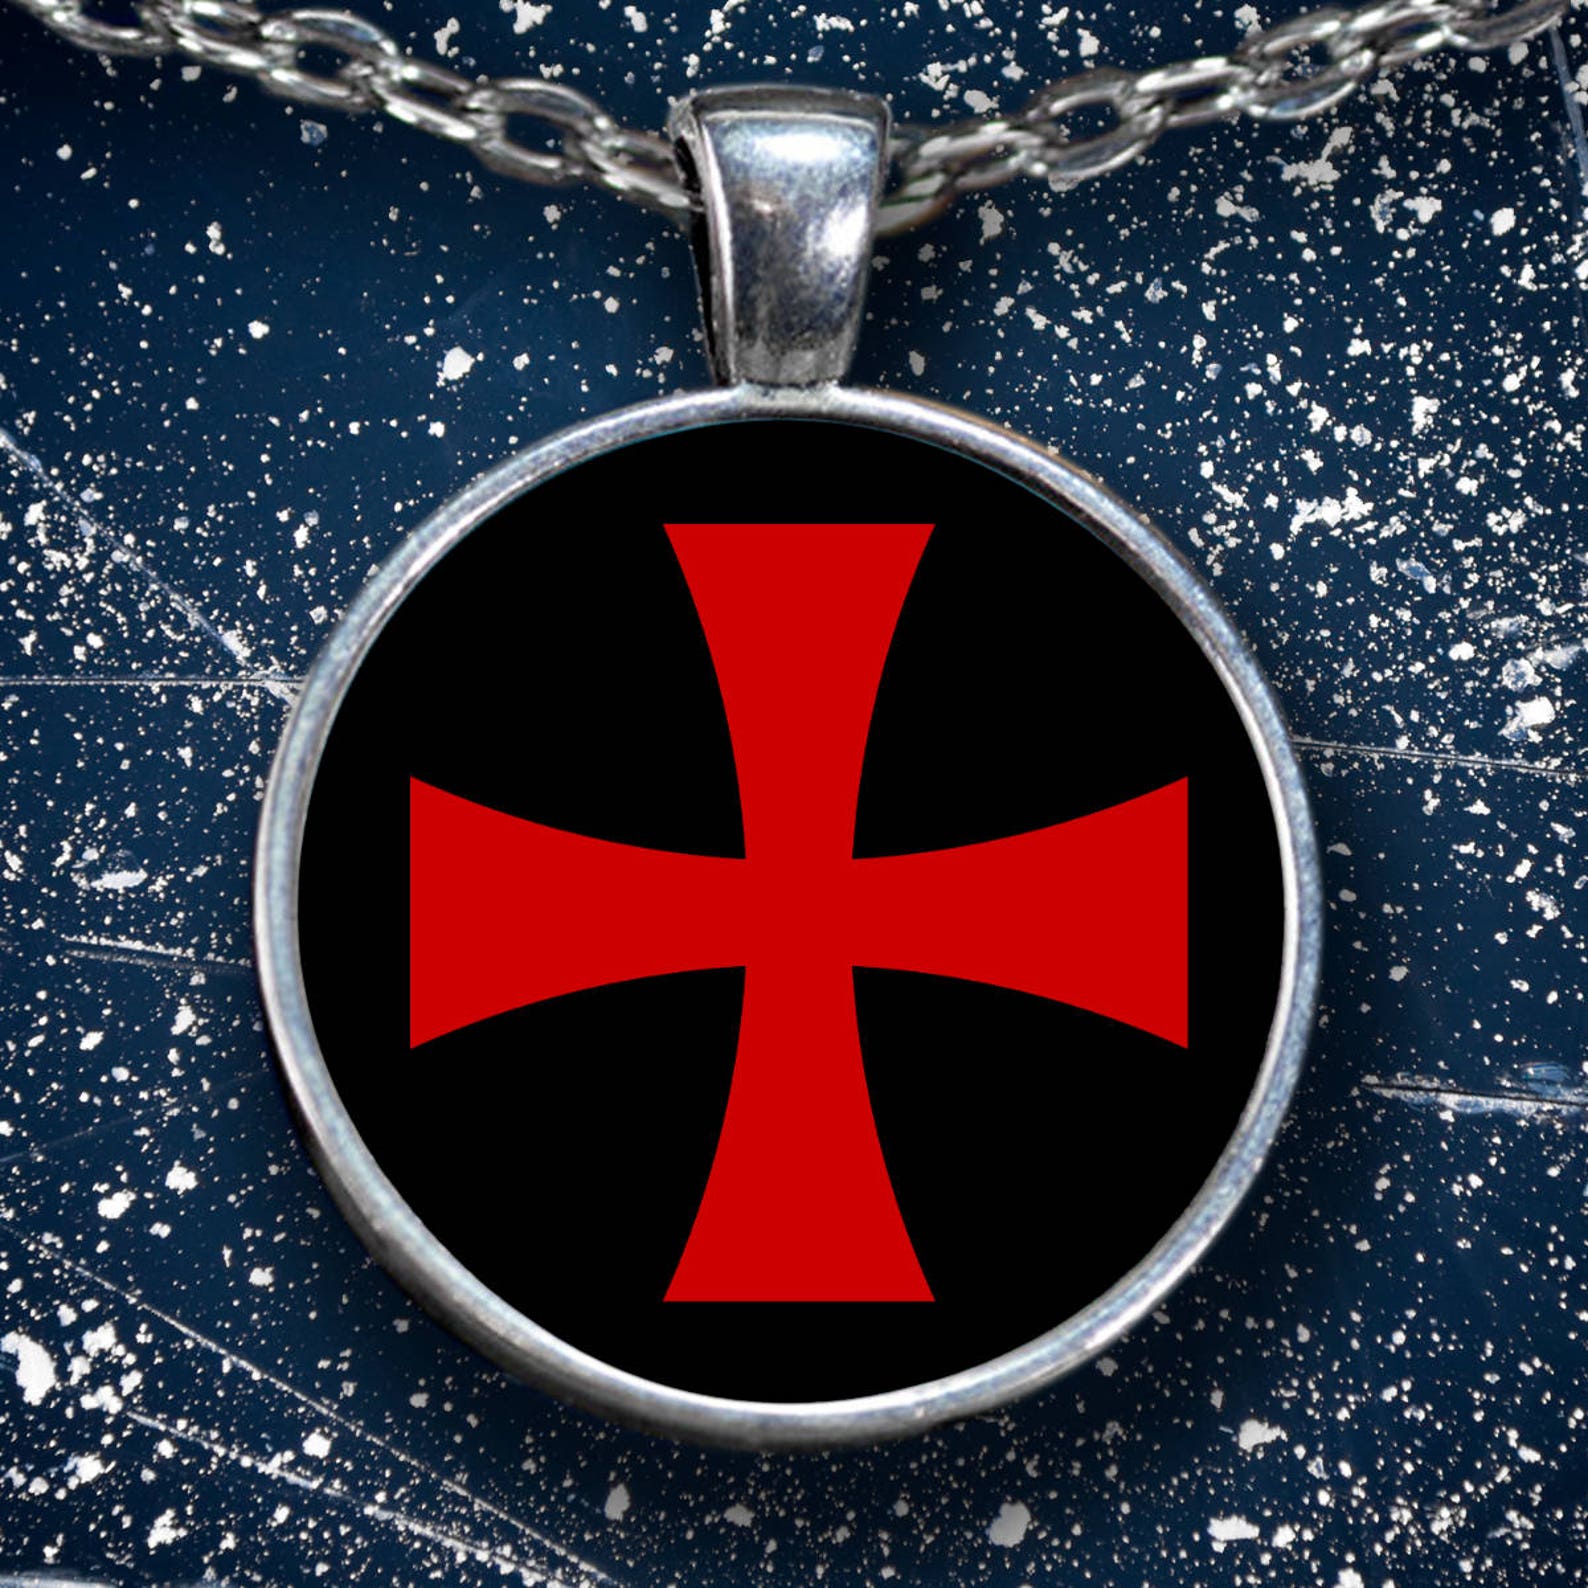 Knights Templar masonic necklace Templar red cross symbol | Etsy